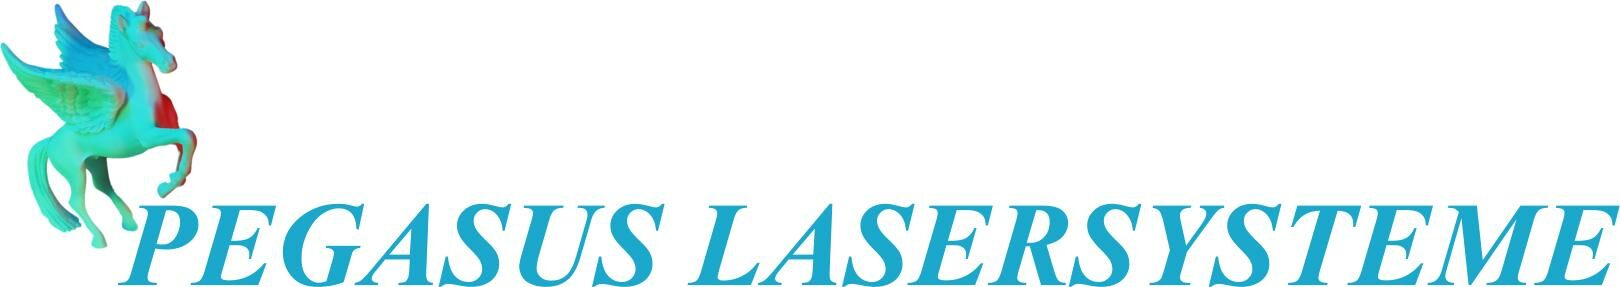 Pegasus Lasersysteme GmbH